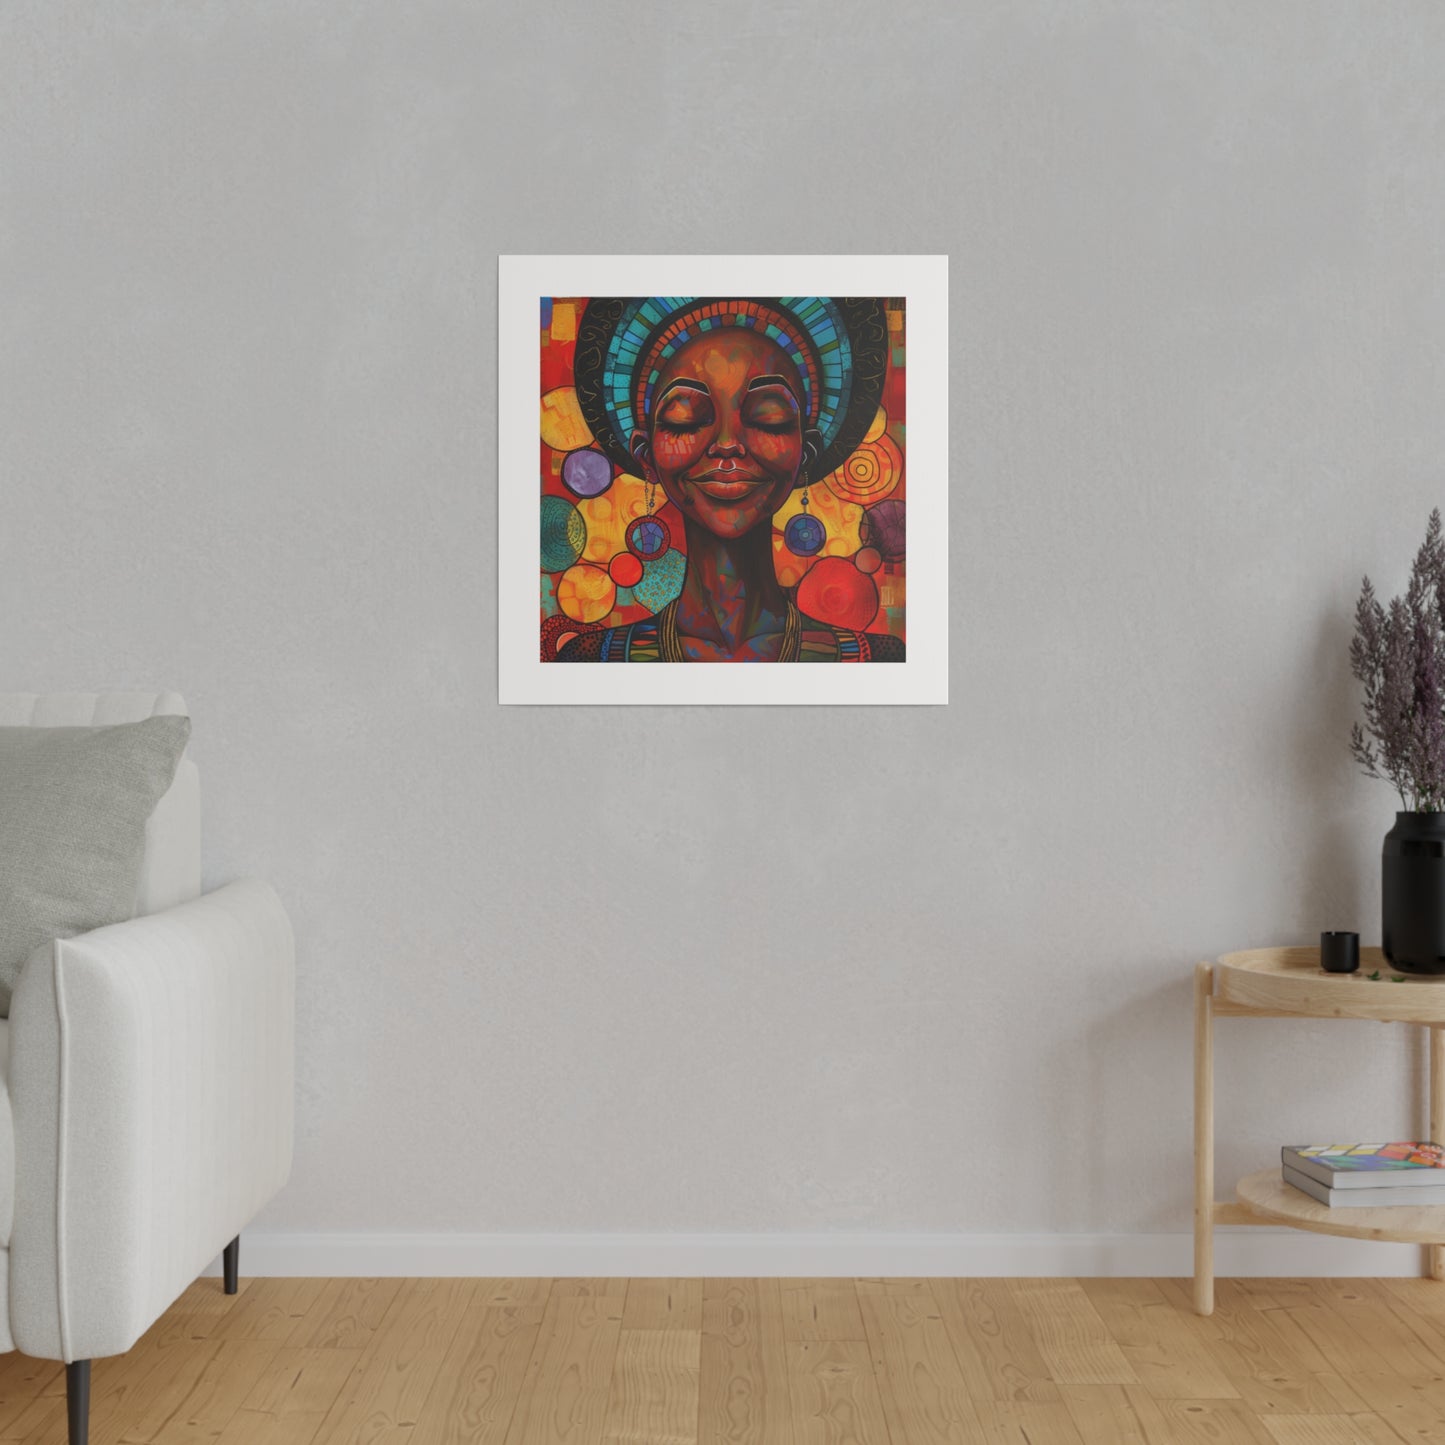 Matte Canvas, Stretched, 0.75" - Proud Black Woman